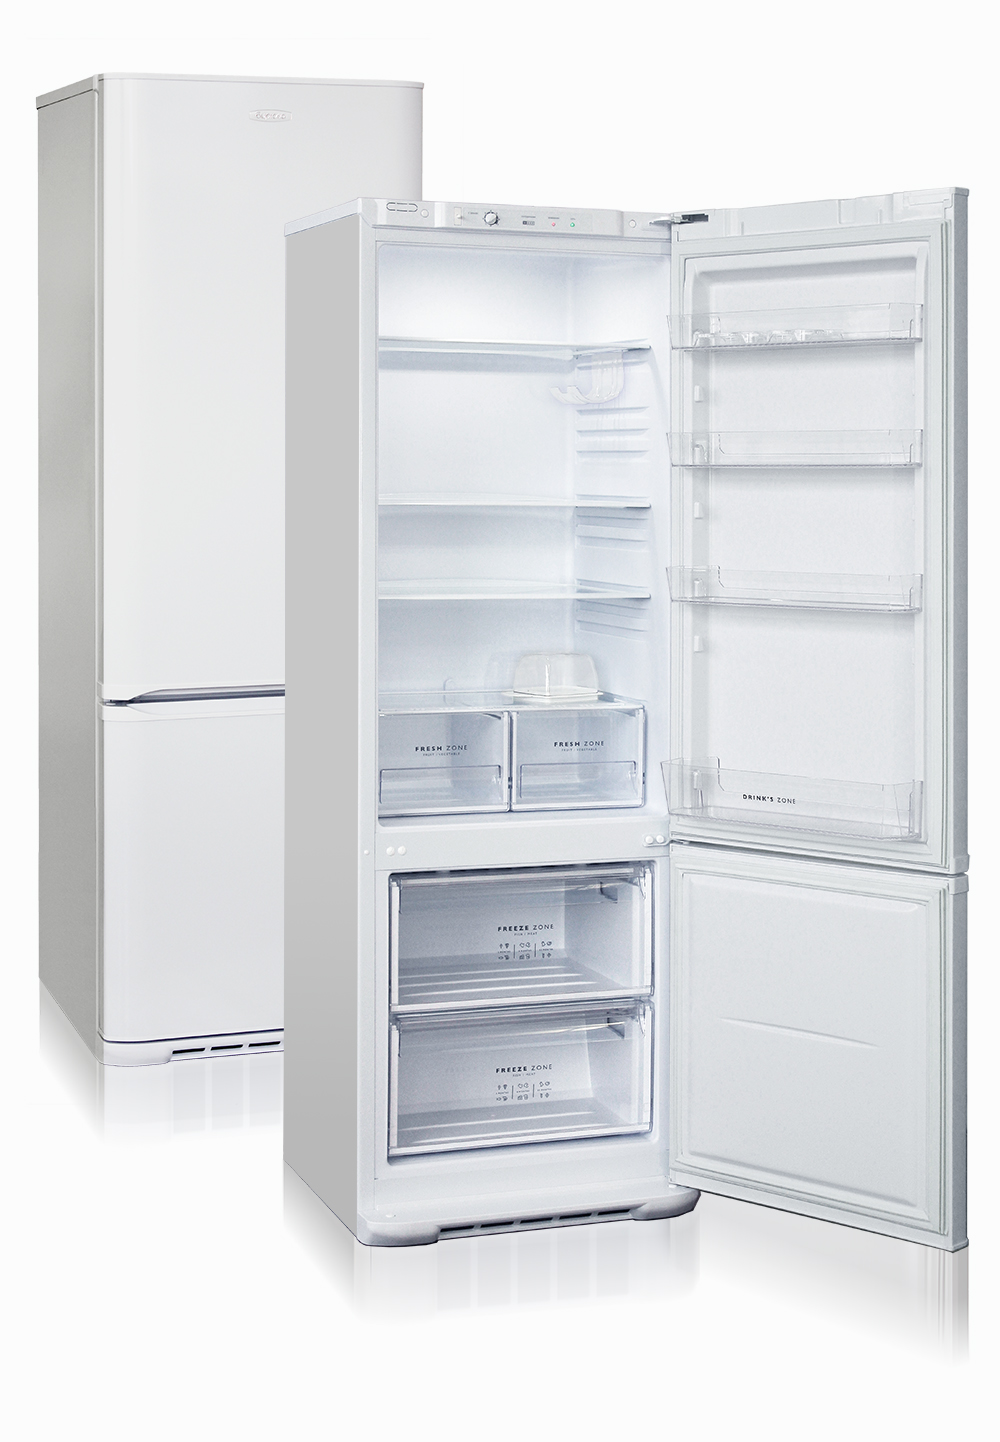 холодильник бирюса 632, купить в Красноярске холодильник бирюса 632,  купить в Красноярске дешево холодильник бирюса 632, купить в Красноярске минимальной цене холодильник бирюса 632